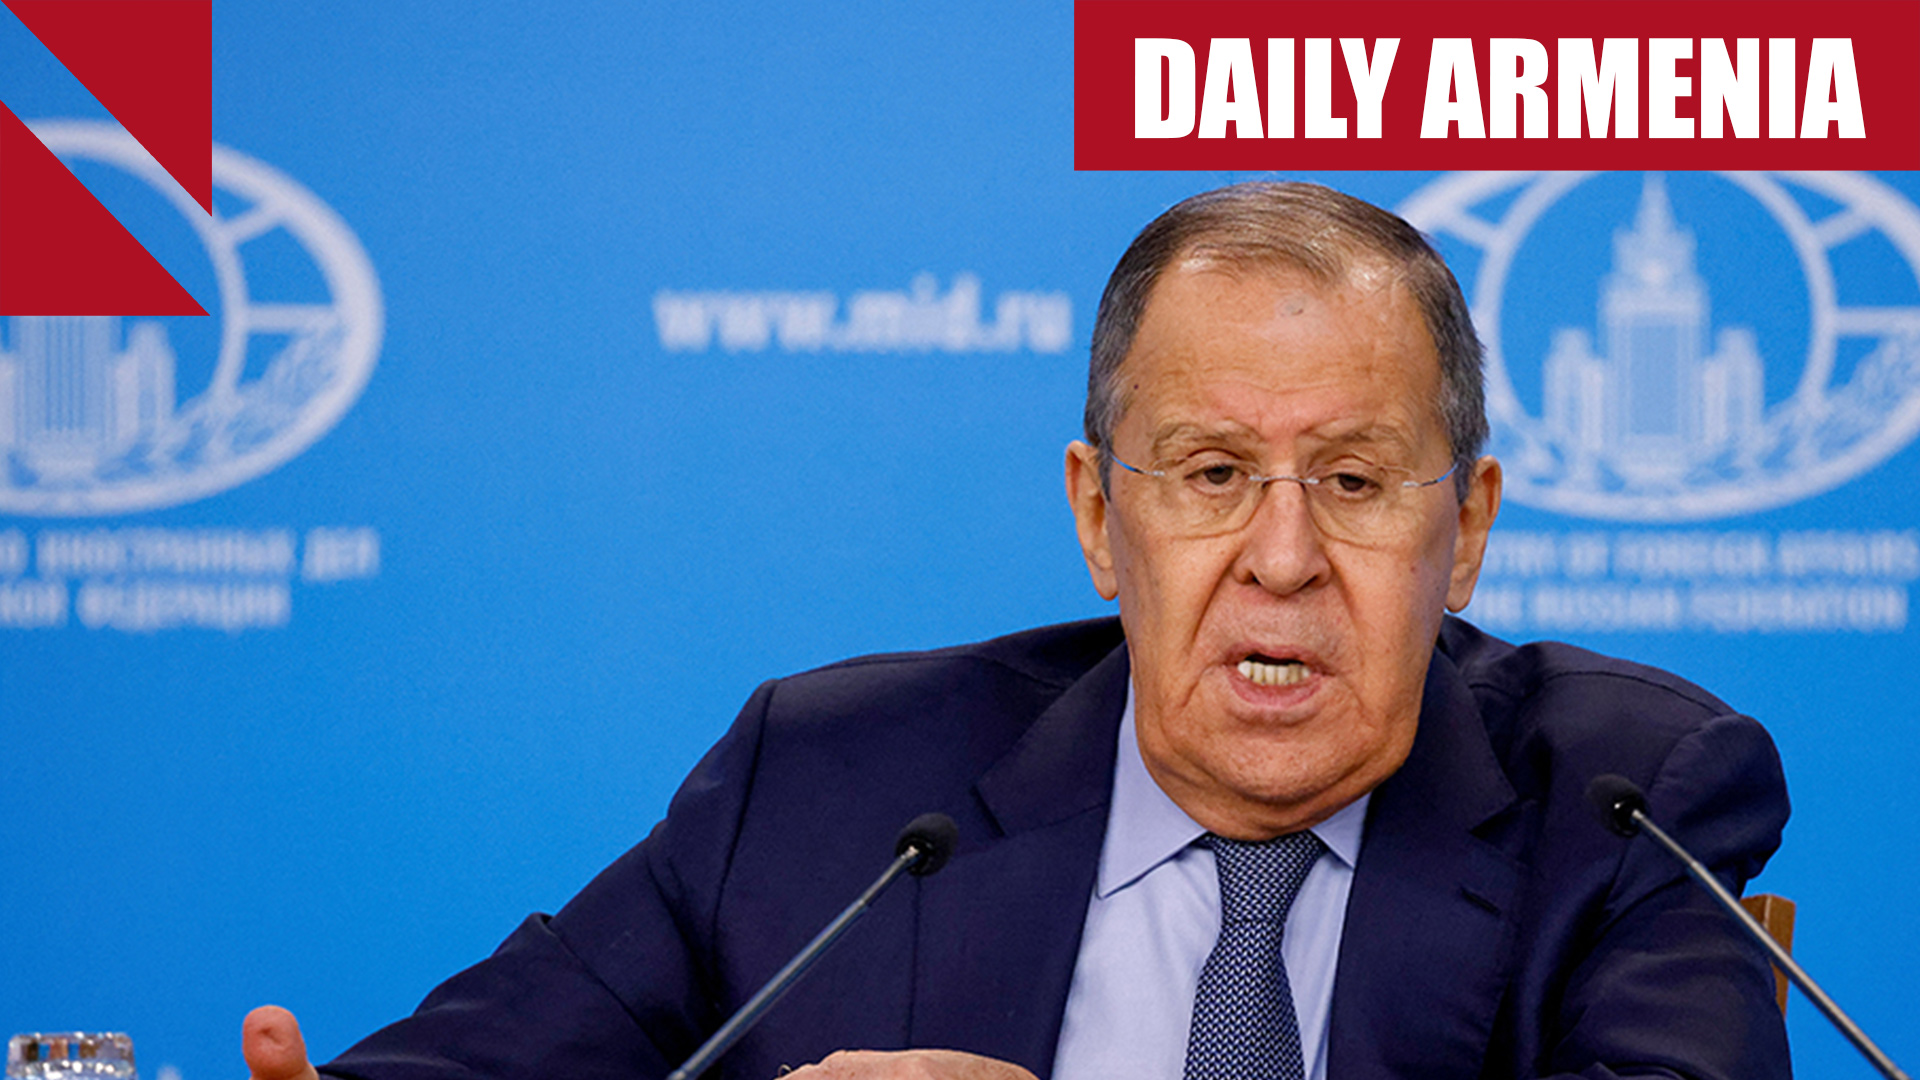 Russia’s-top-diplomat-dismisses-Azerbaijan’s-demand-for-corridor-through-Armenia